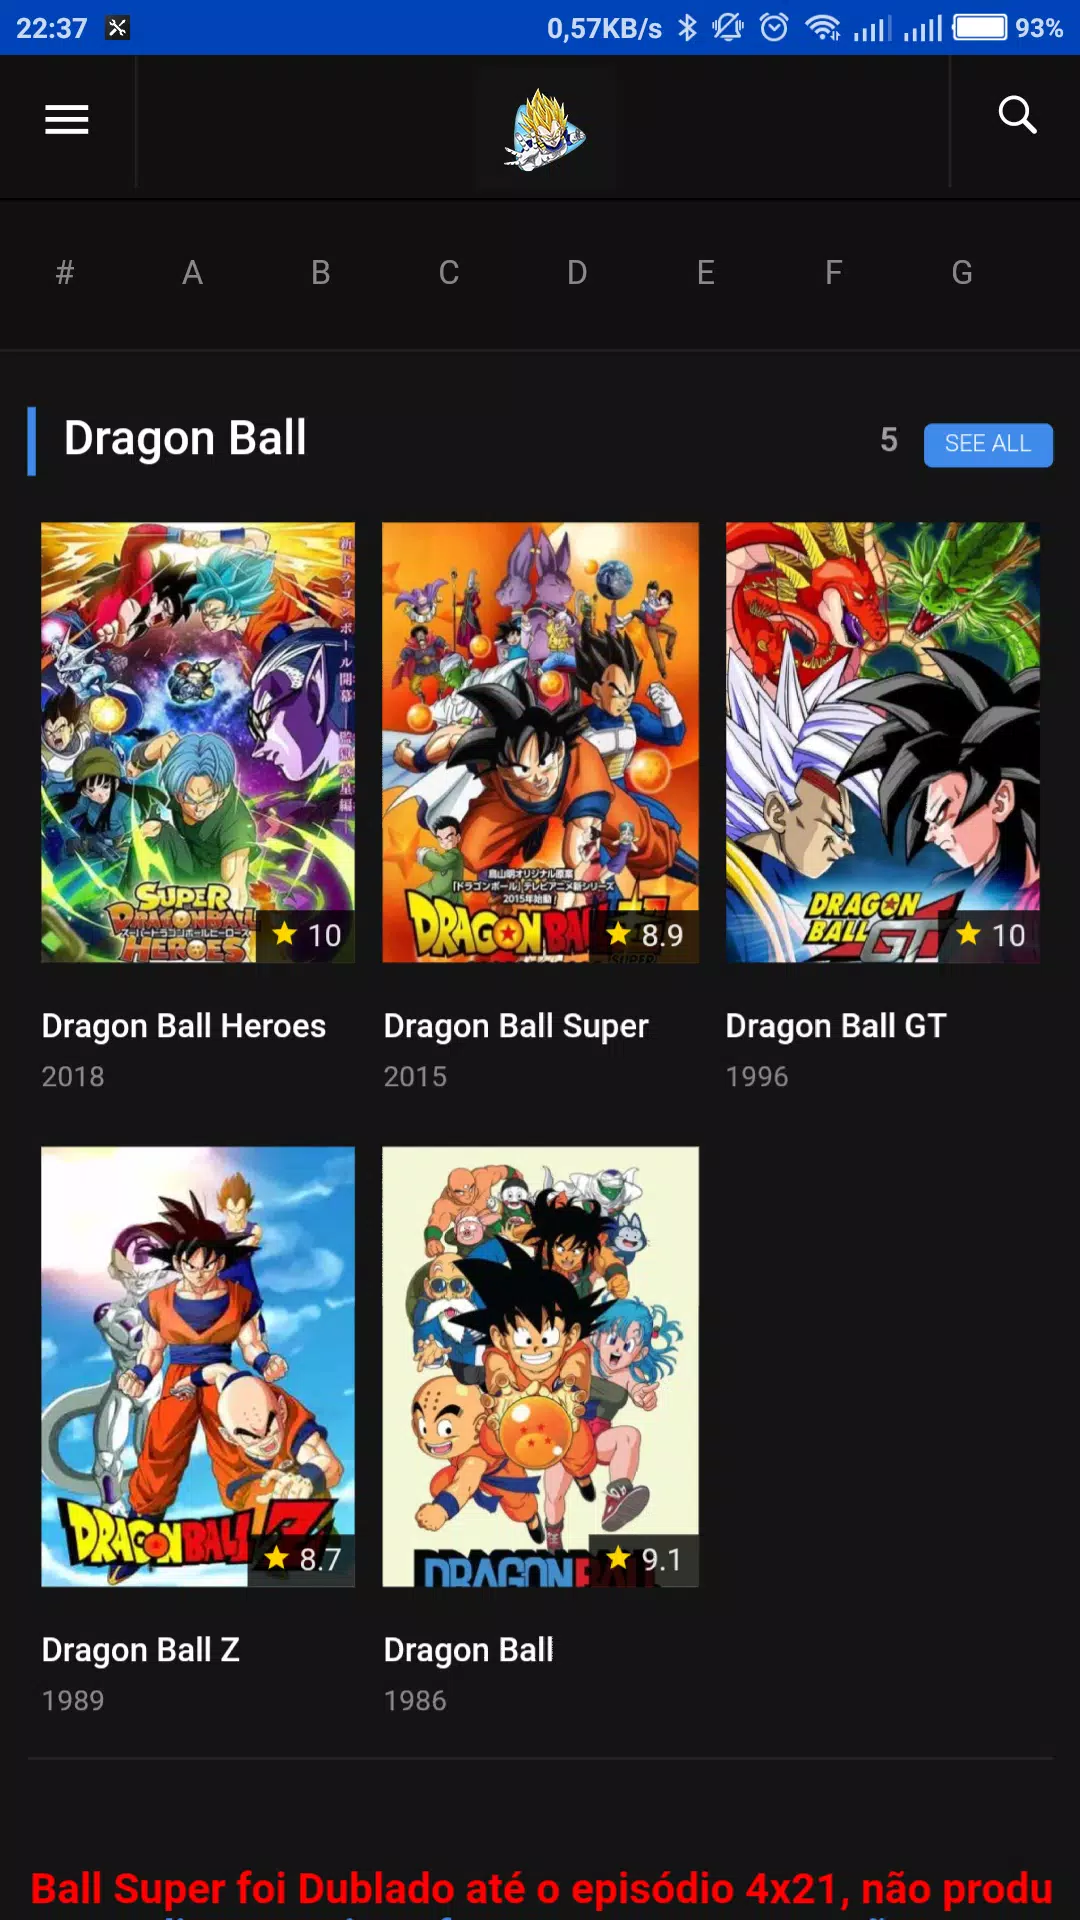 Super Dragon Ball Heroes (Dublado) - todos os ep - assistir online